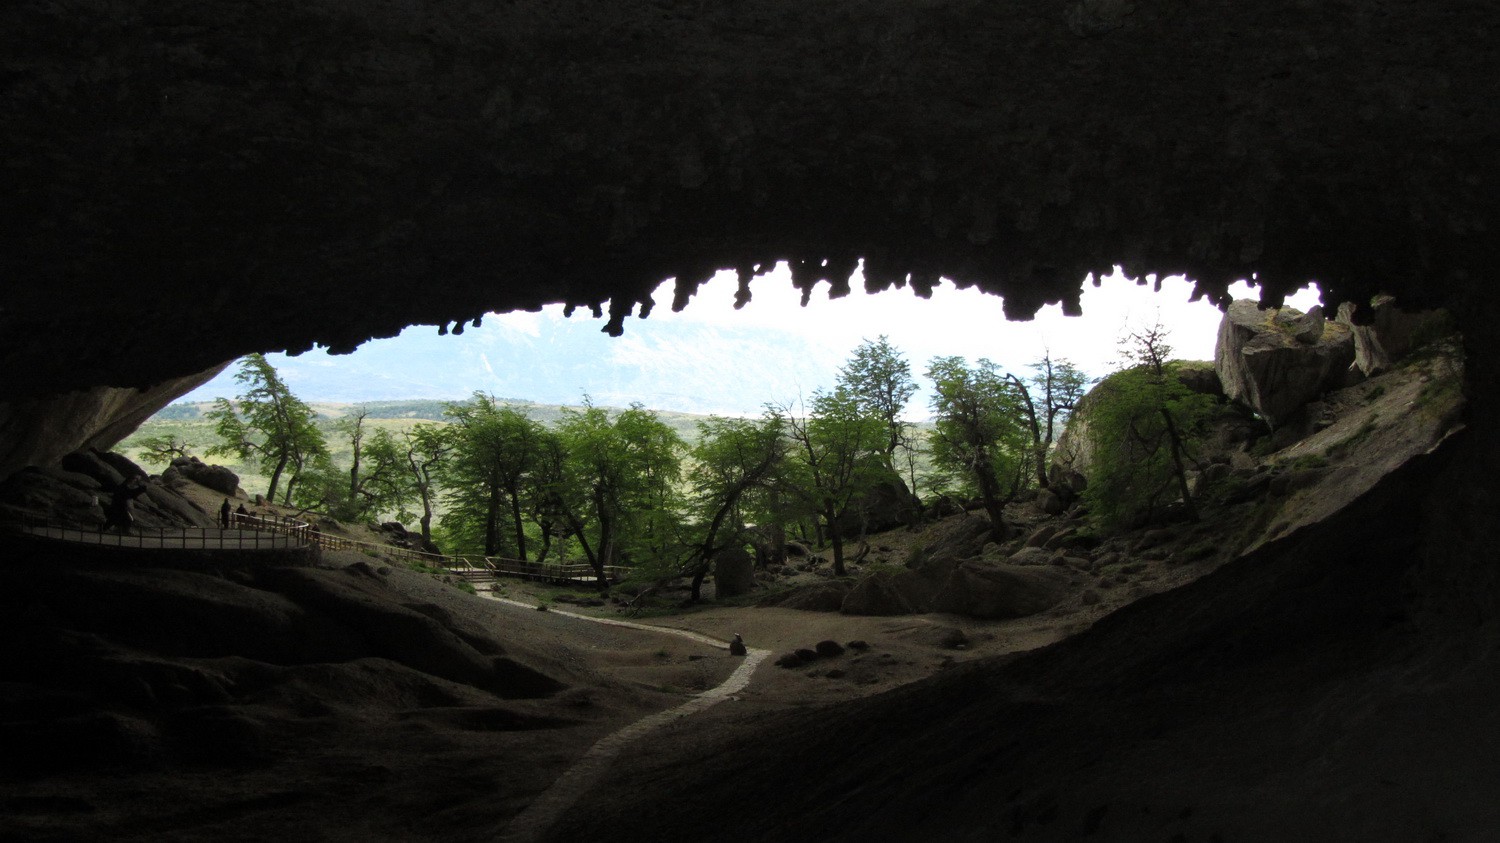 In the cave Cueva del Milodon